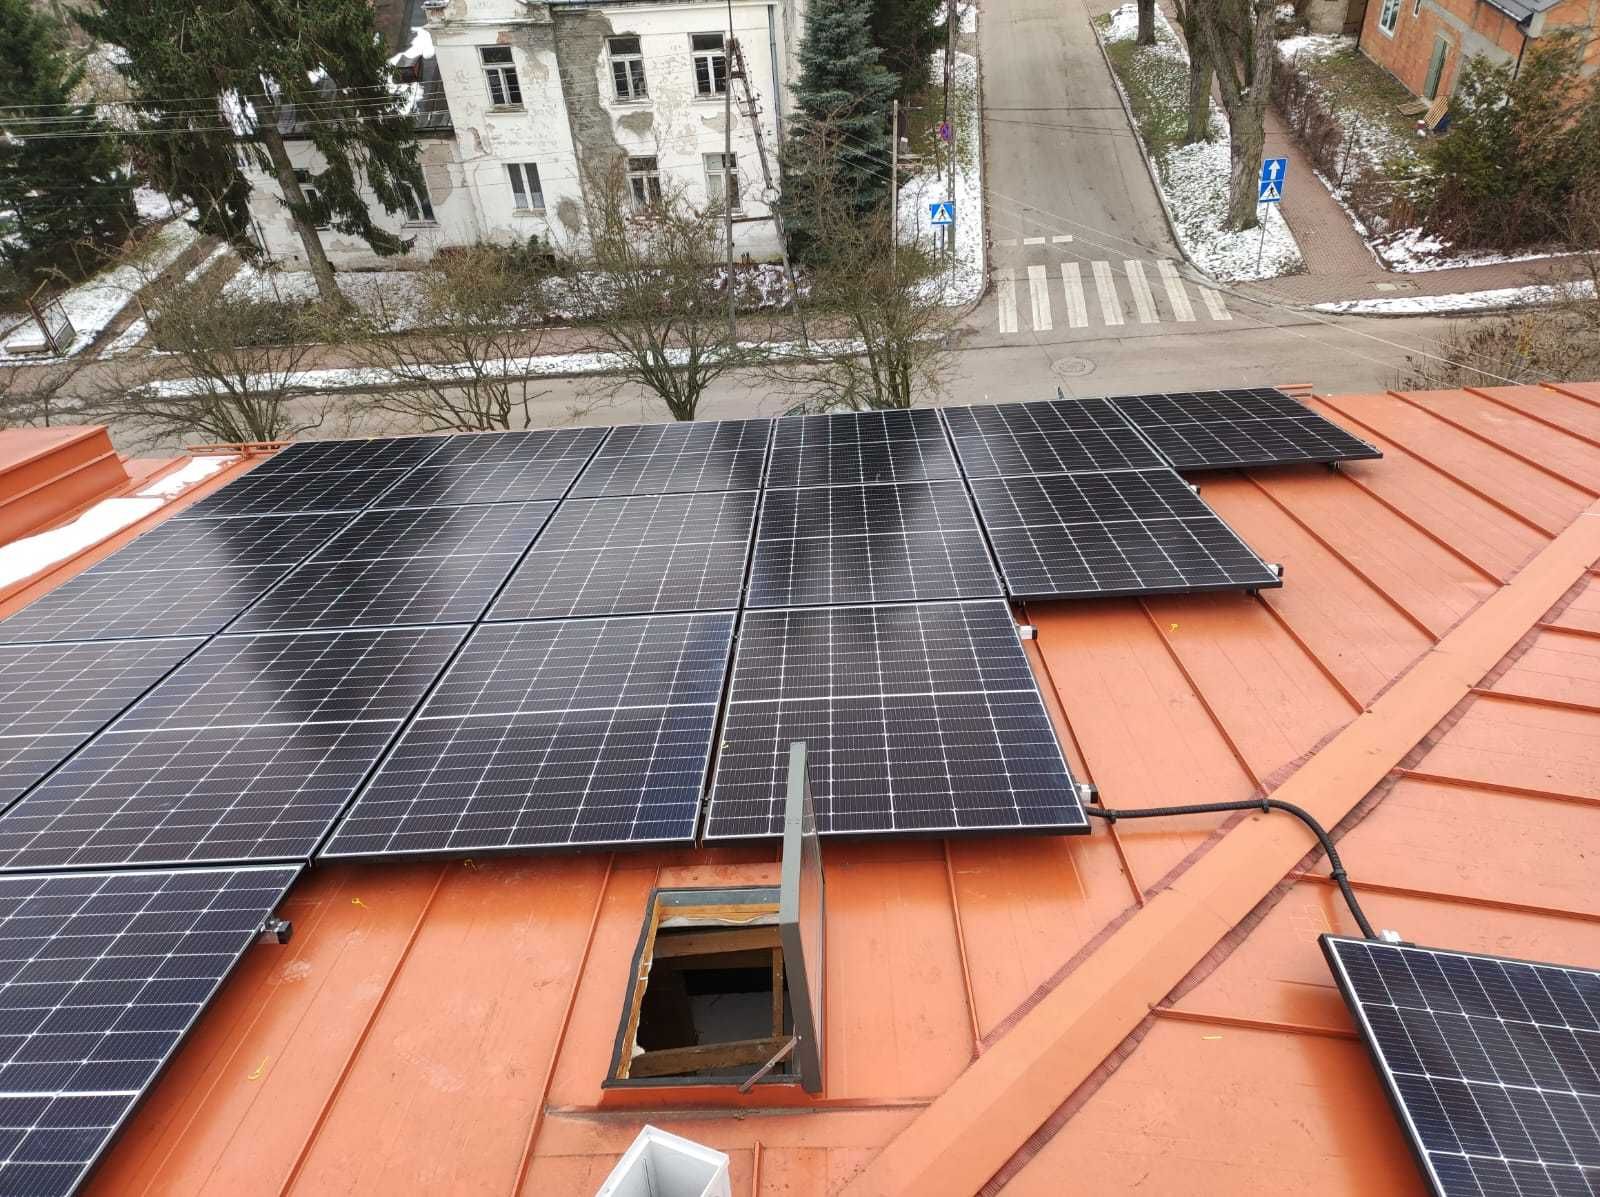 Fotowoltaika instalacja fotowoltaiczna moduły solarne panele słoneczne